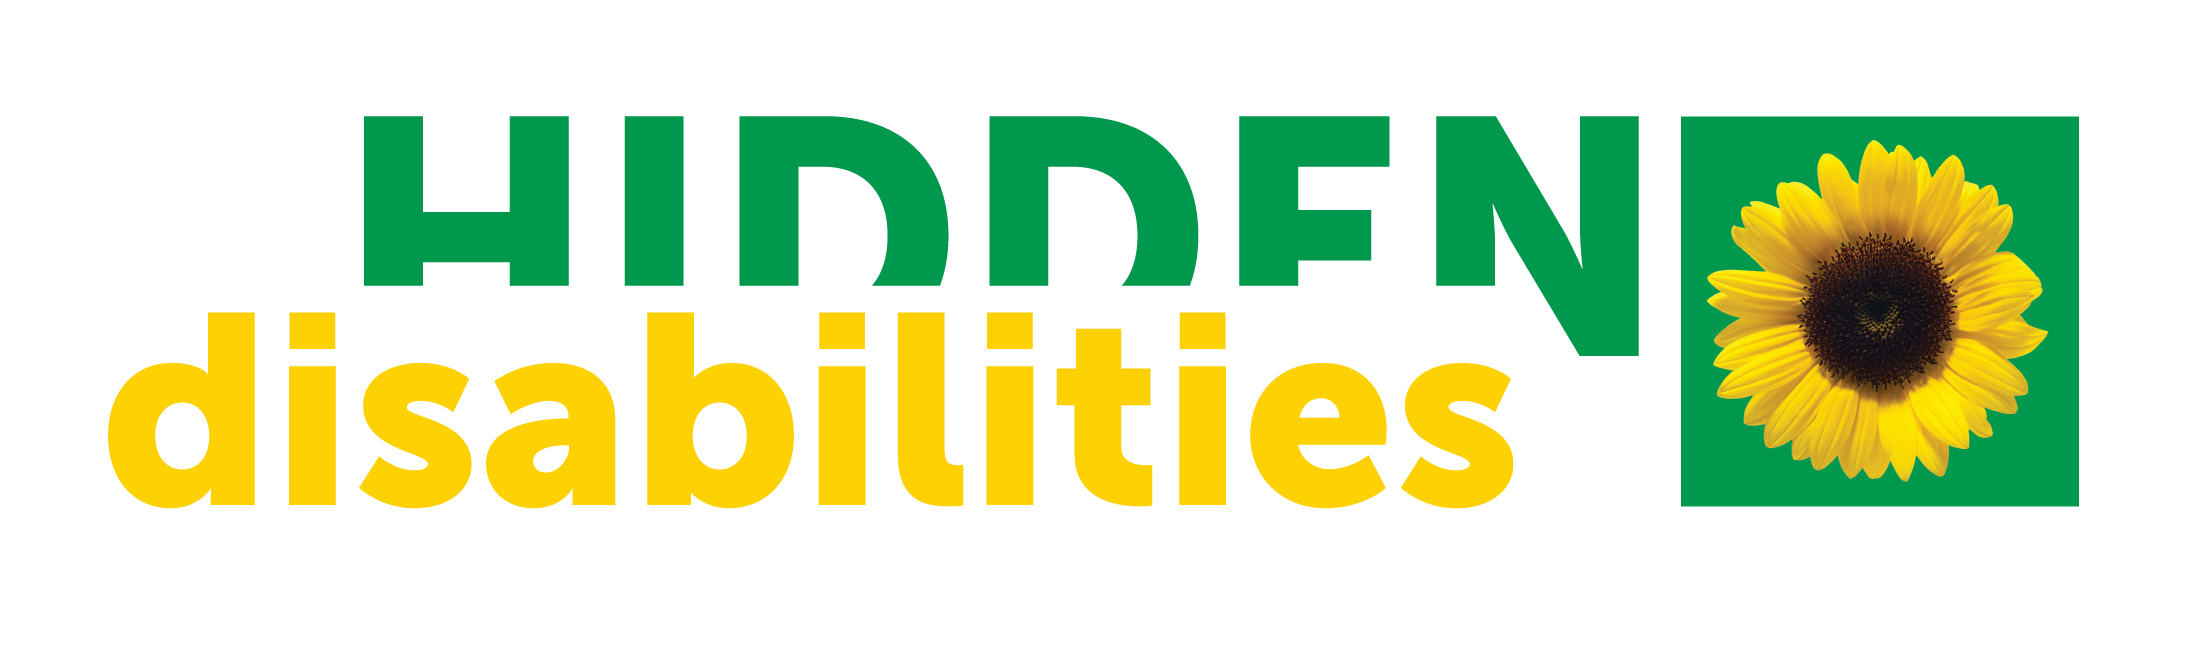 Hidden Disabilities text logo green and yellow